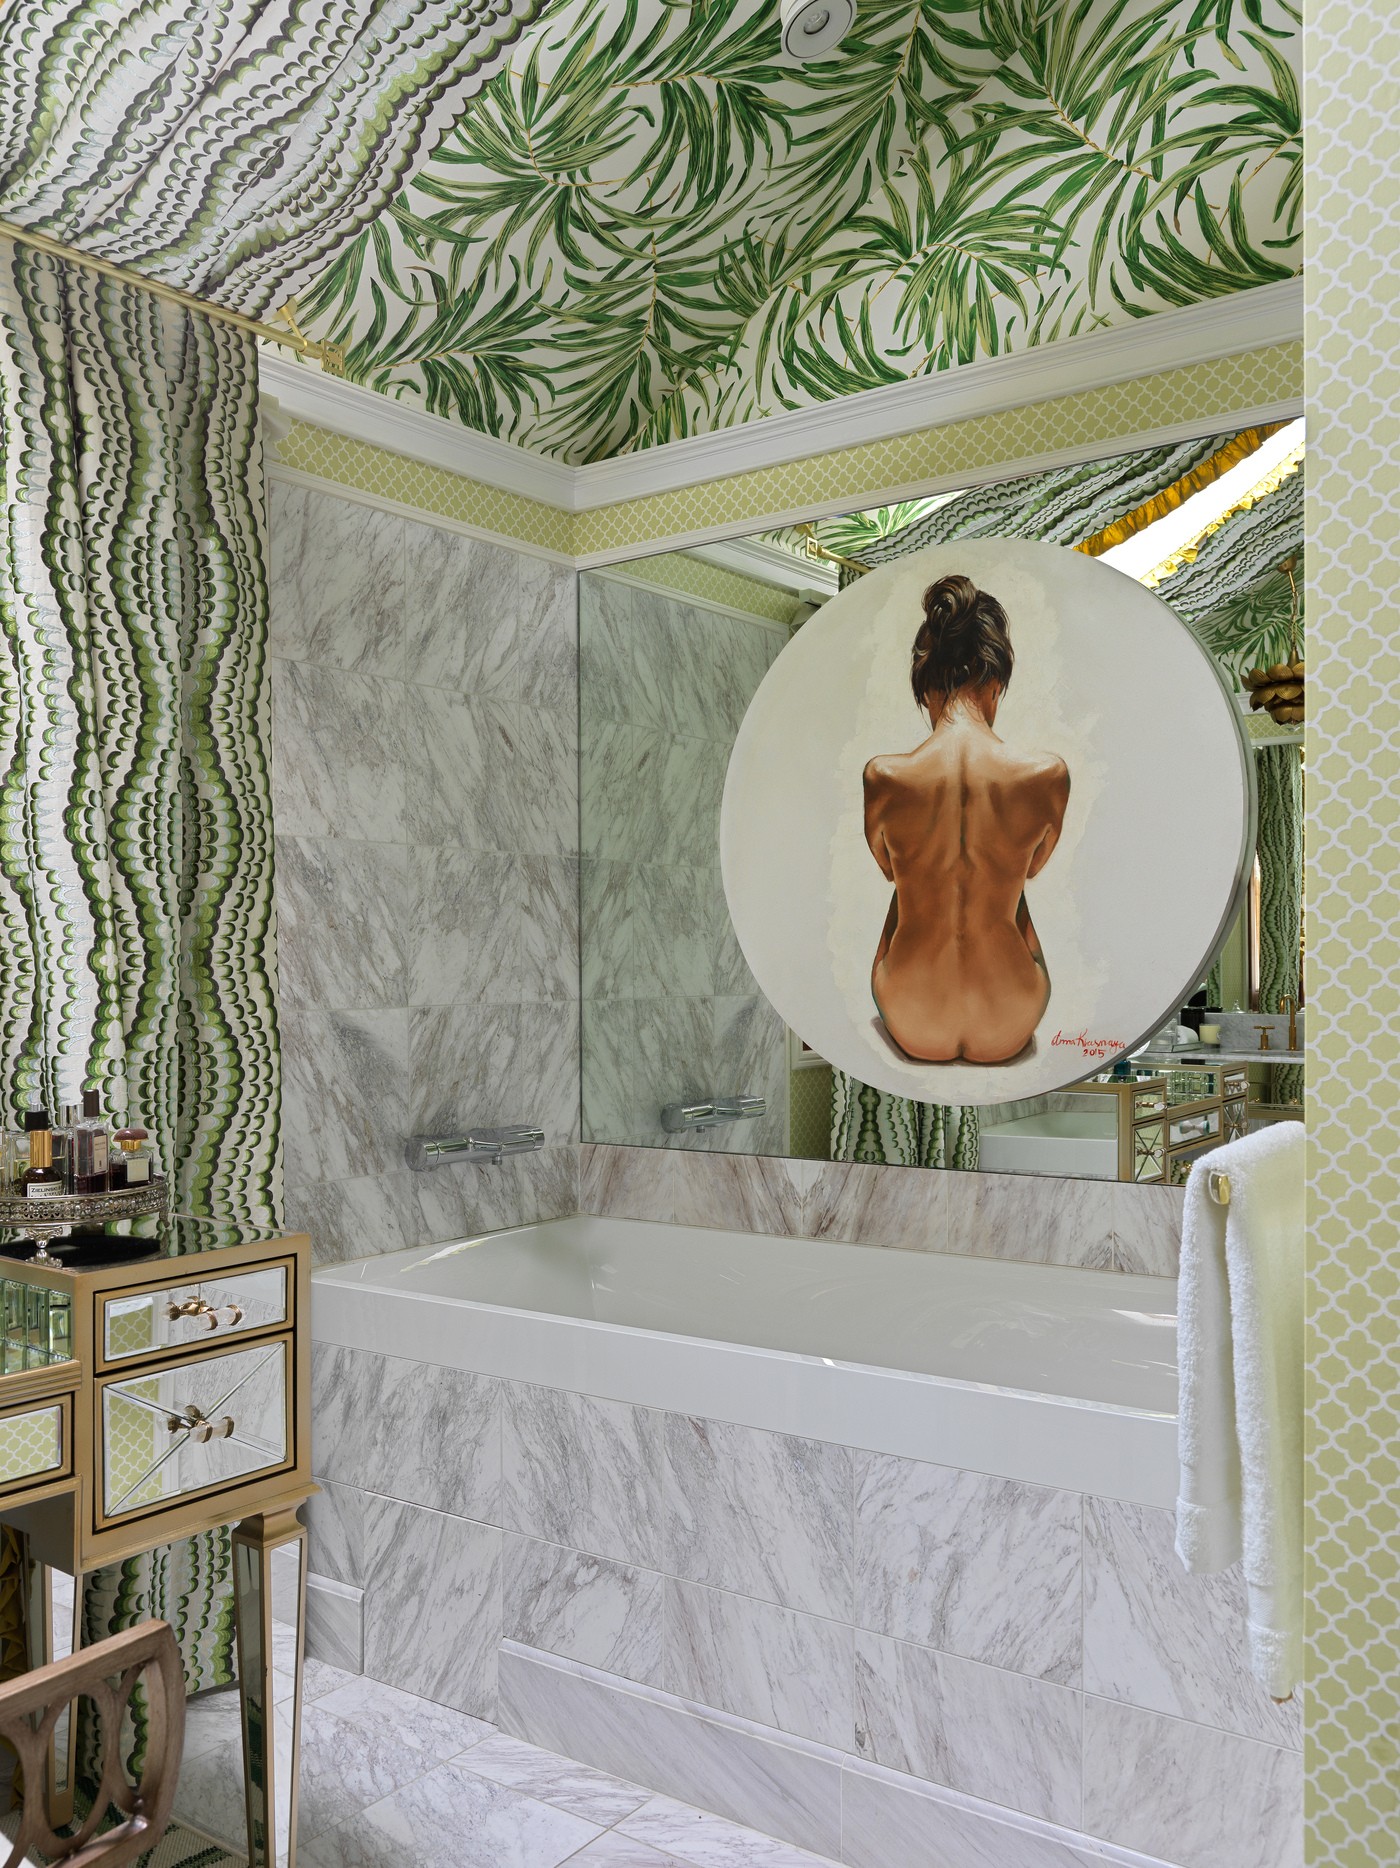 Décor do dia: banheiro maximalista tem papel de parede até o teto (Foto: Sergey Krasyuk)